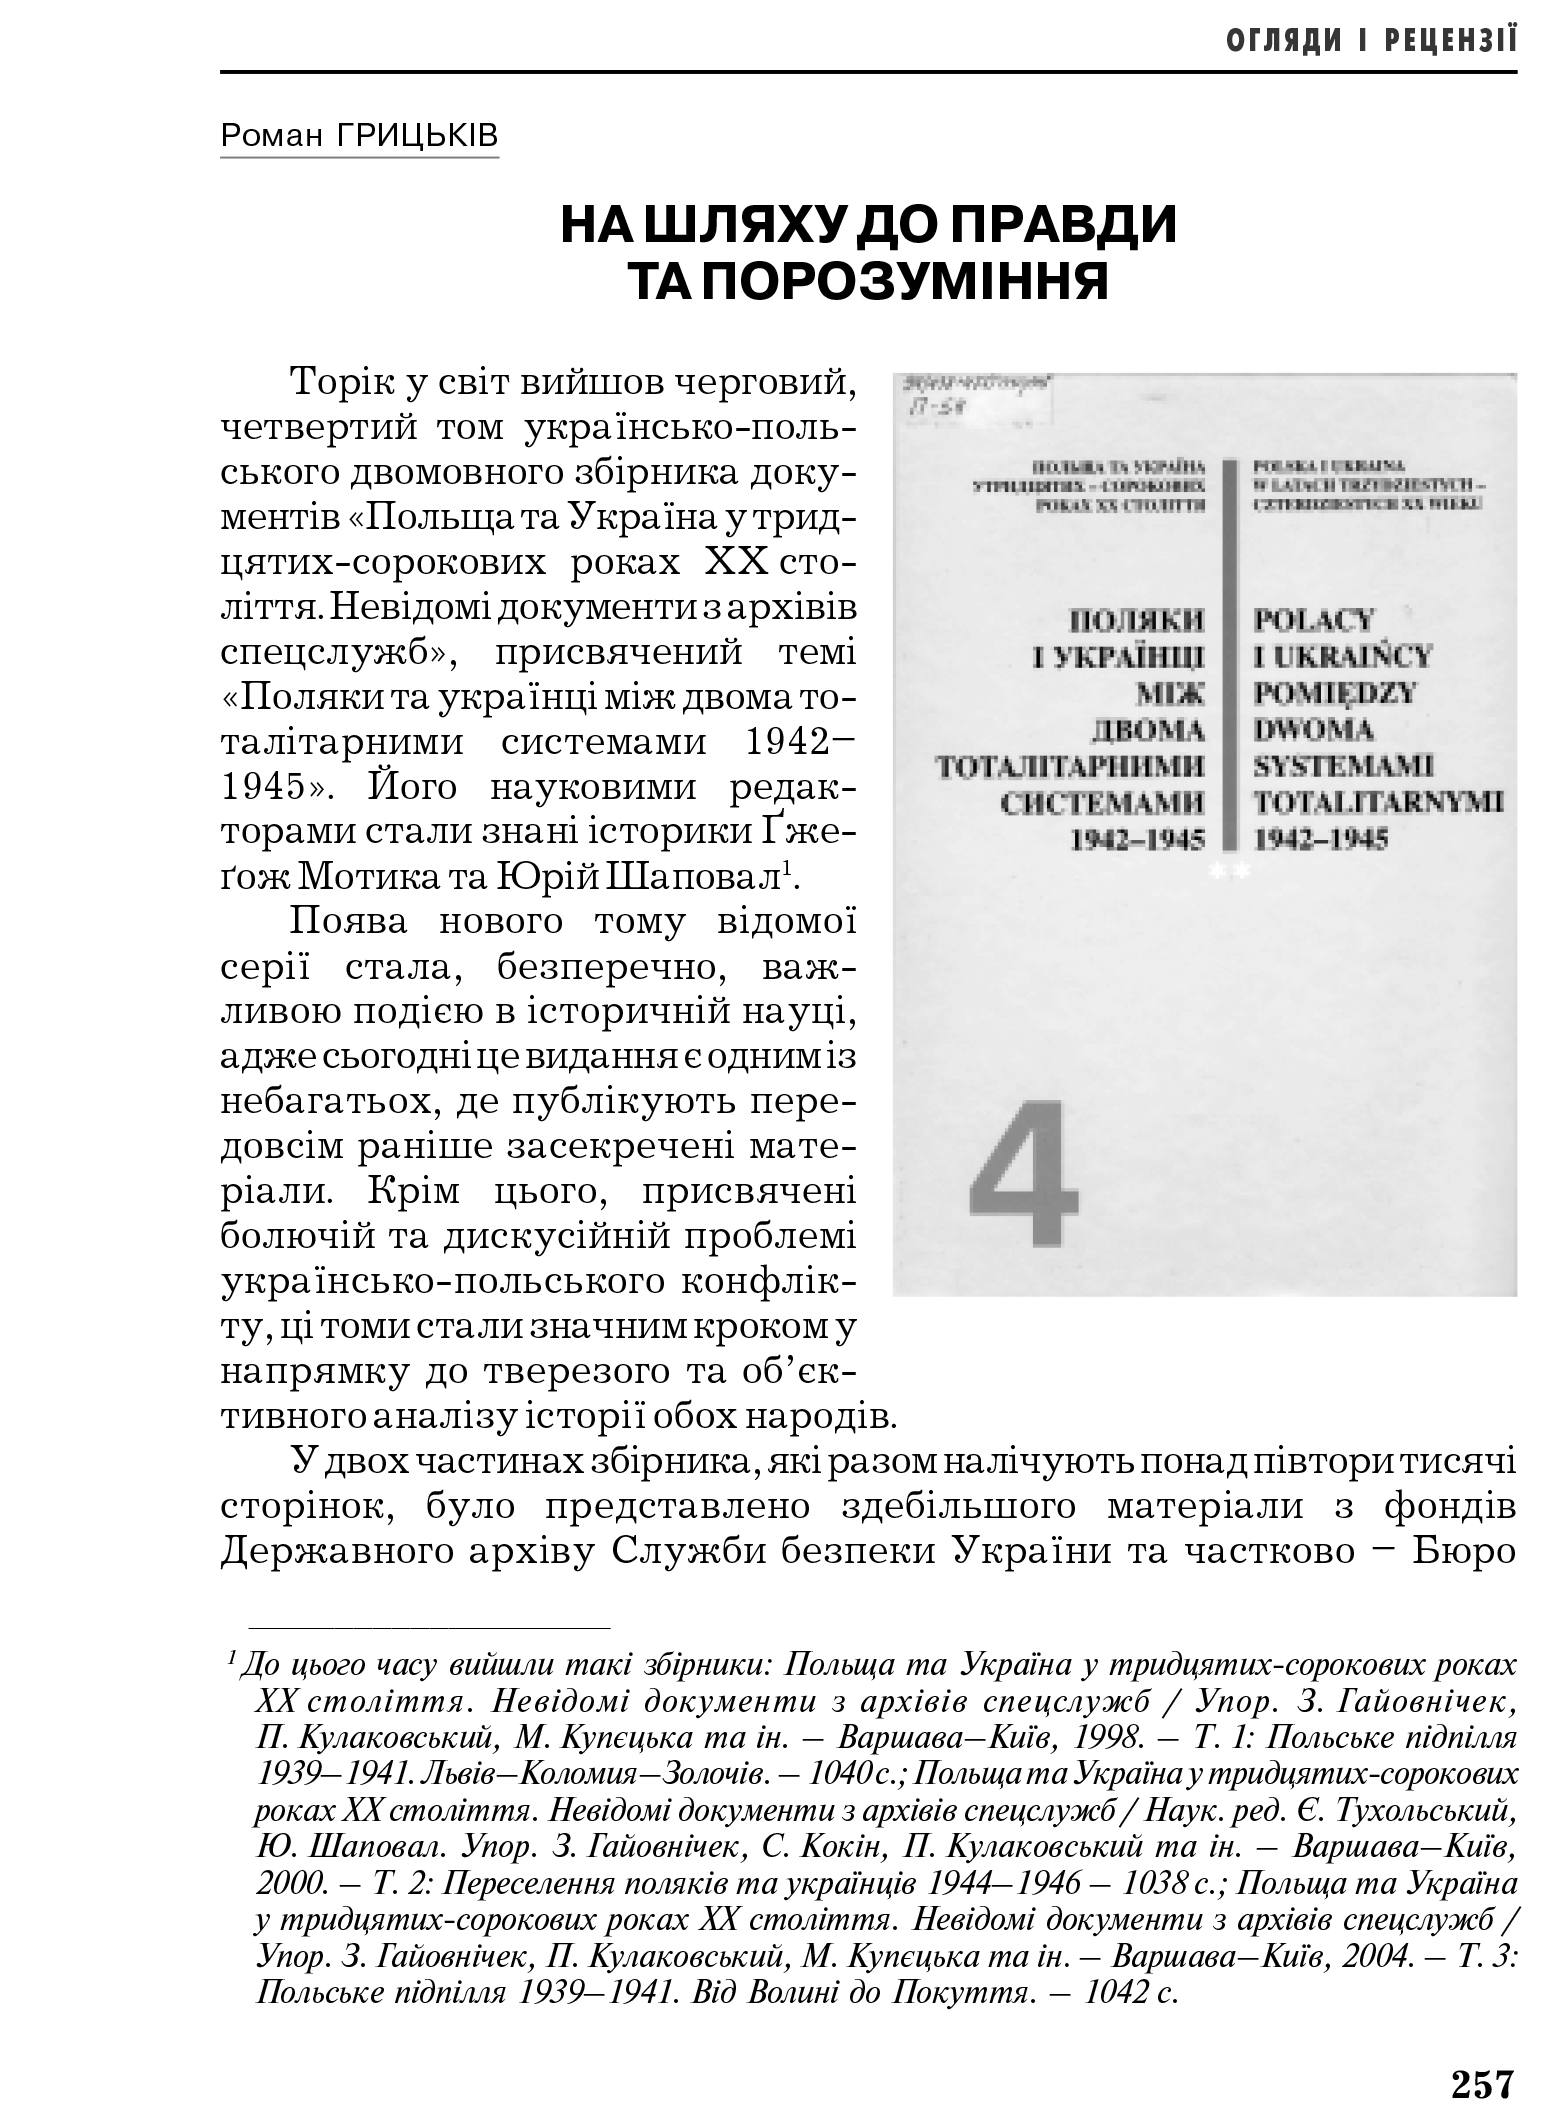 Український визвольний рух №6, ст. 257 - 264